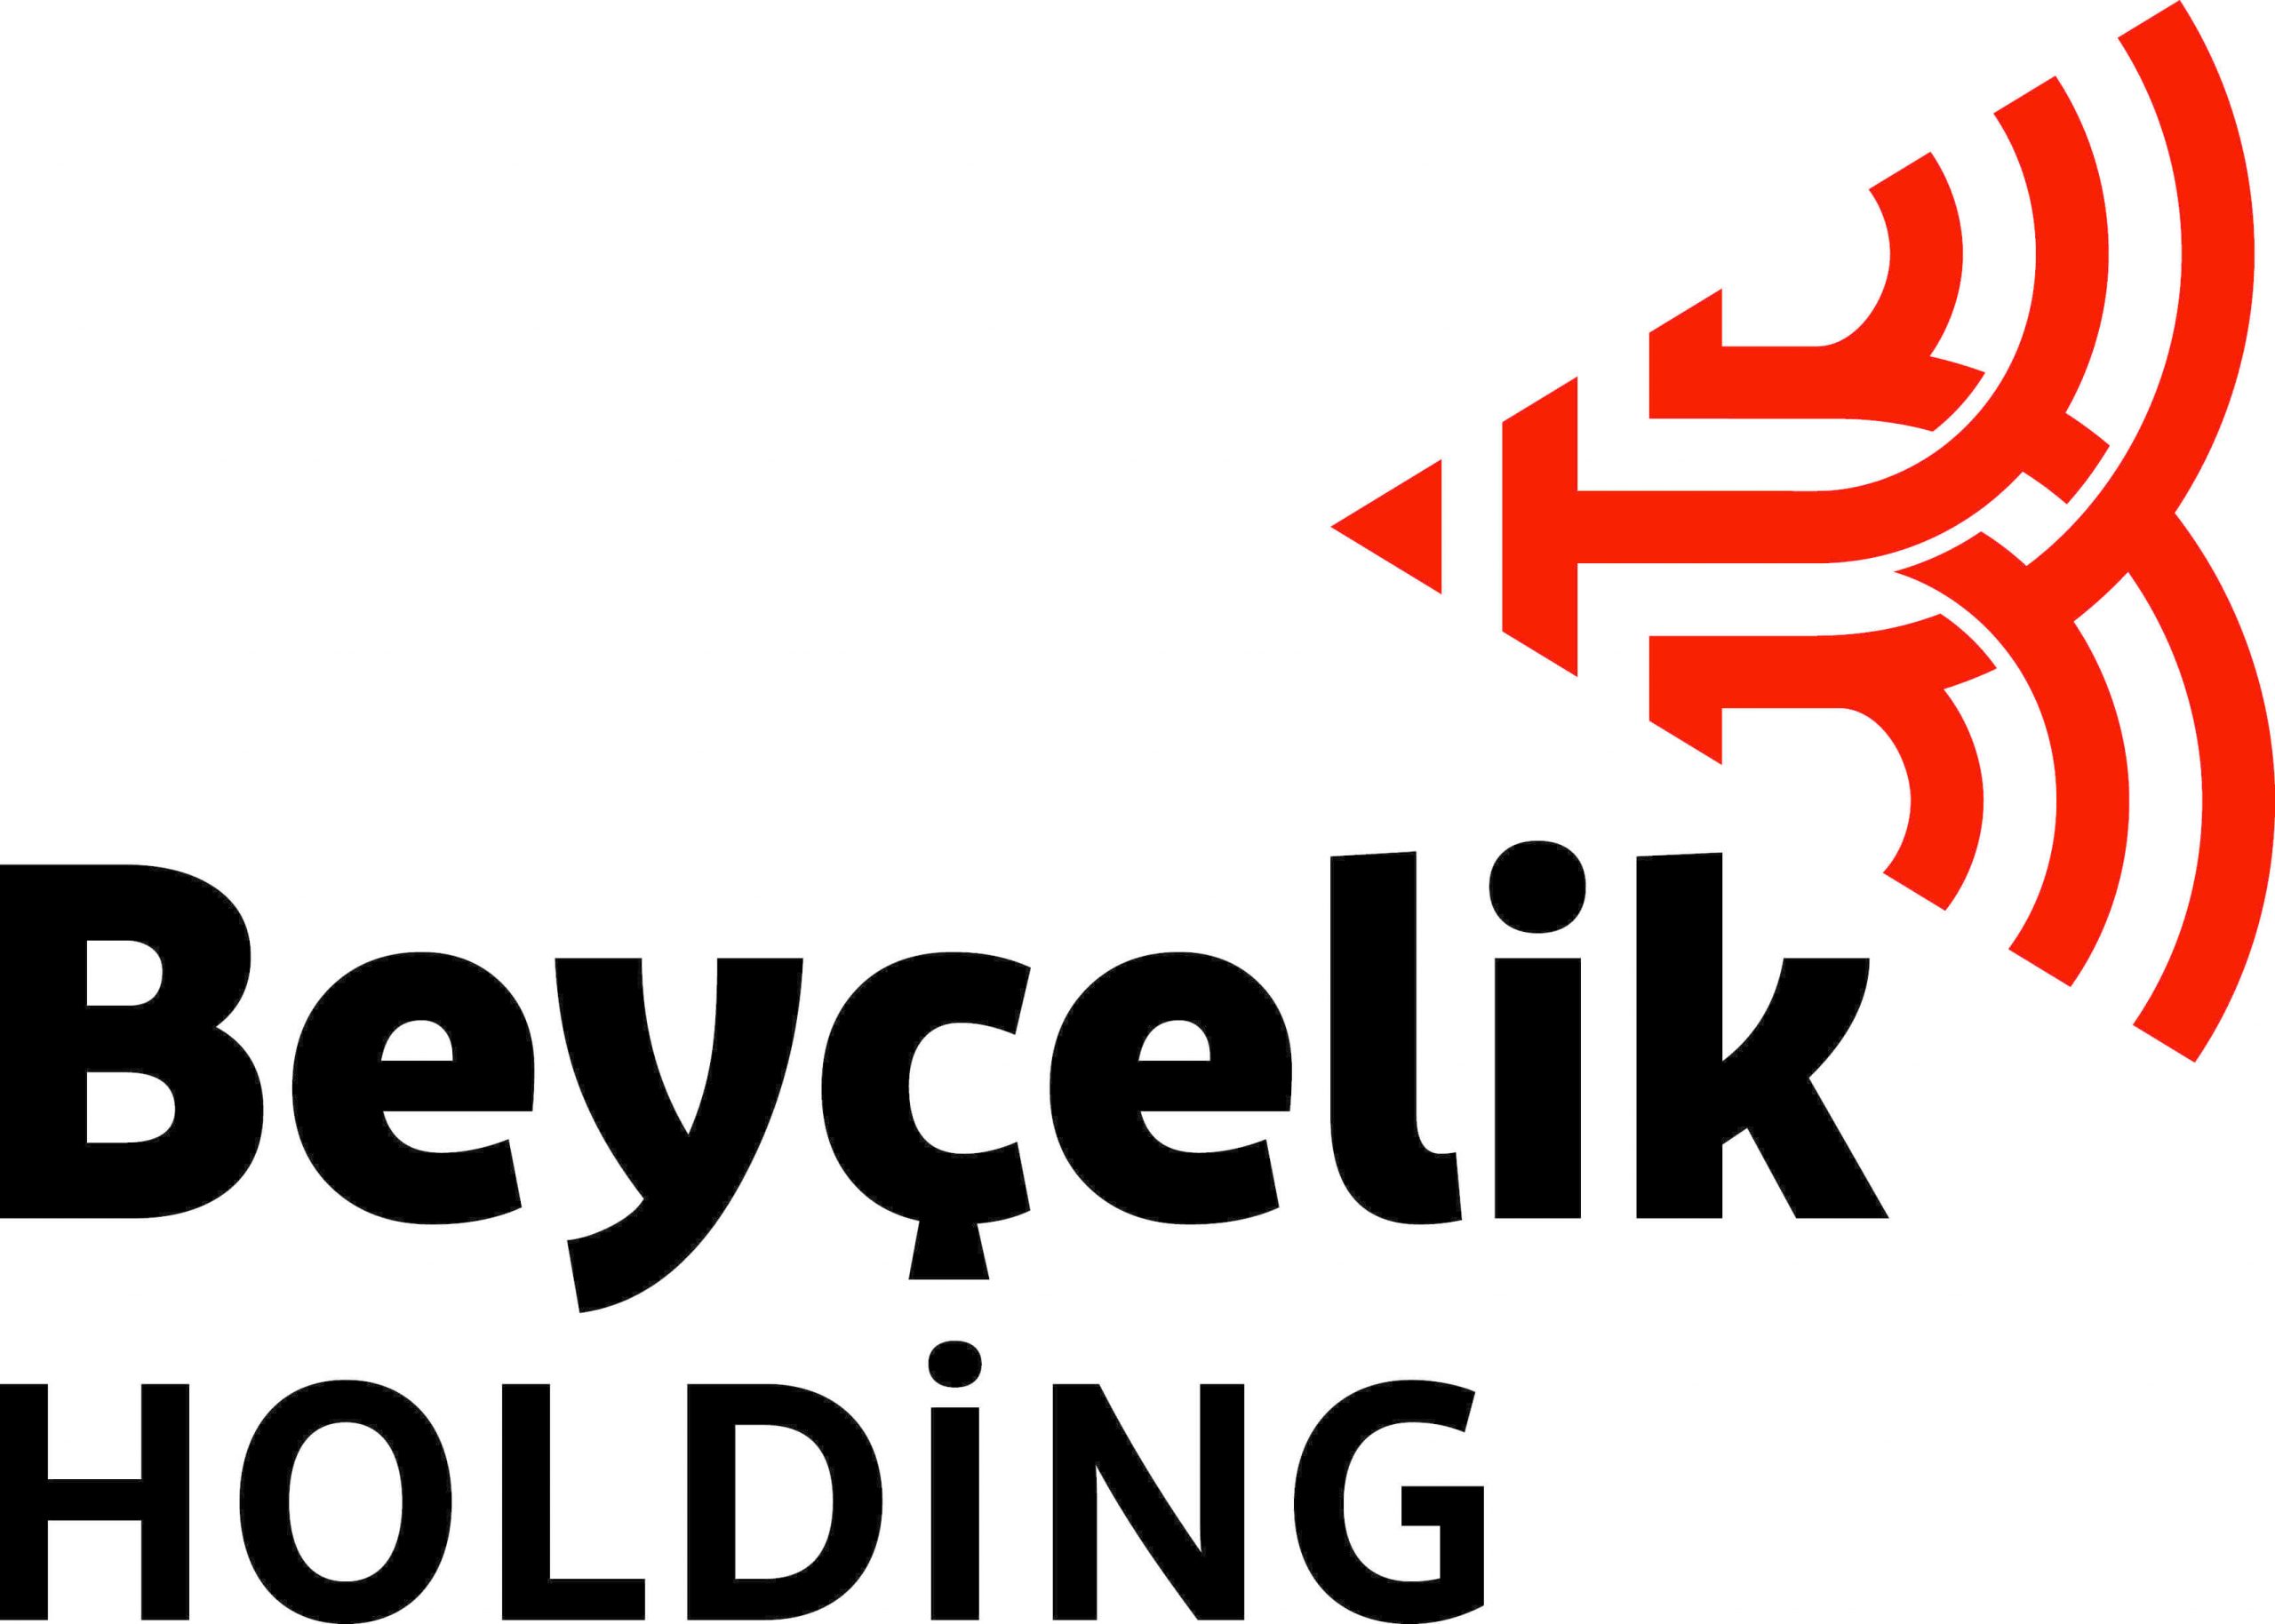 beycelik-holding